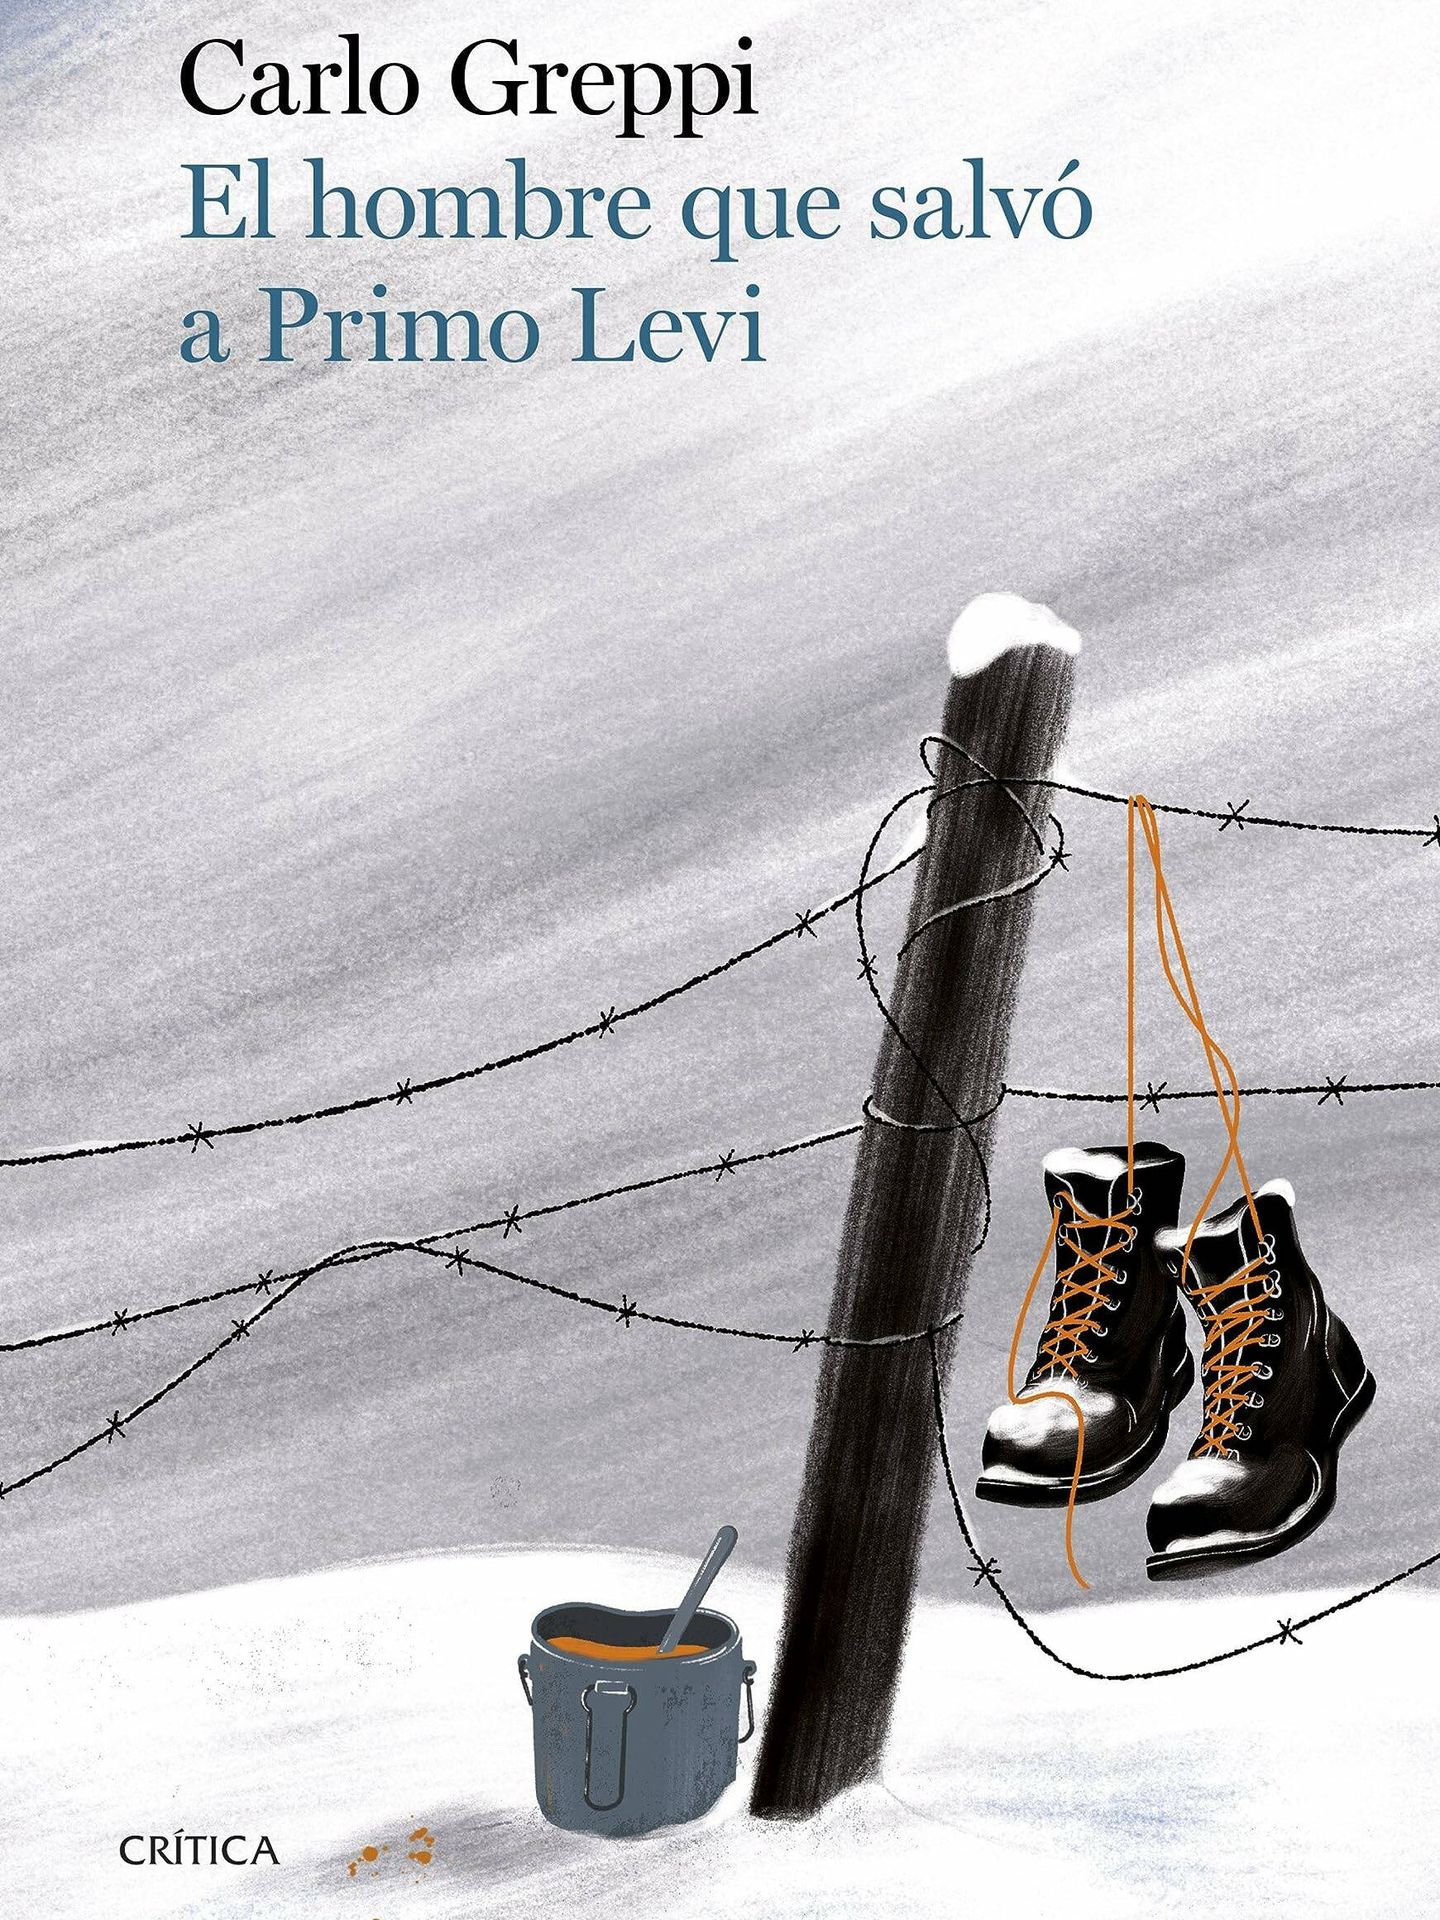 Portada de 'El hombre que salvó a Primo Levi', libro en el que el historiador Carlo Greppi reconstruye la vida de Lorenzo Perrone. 